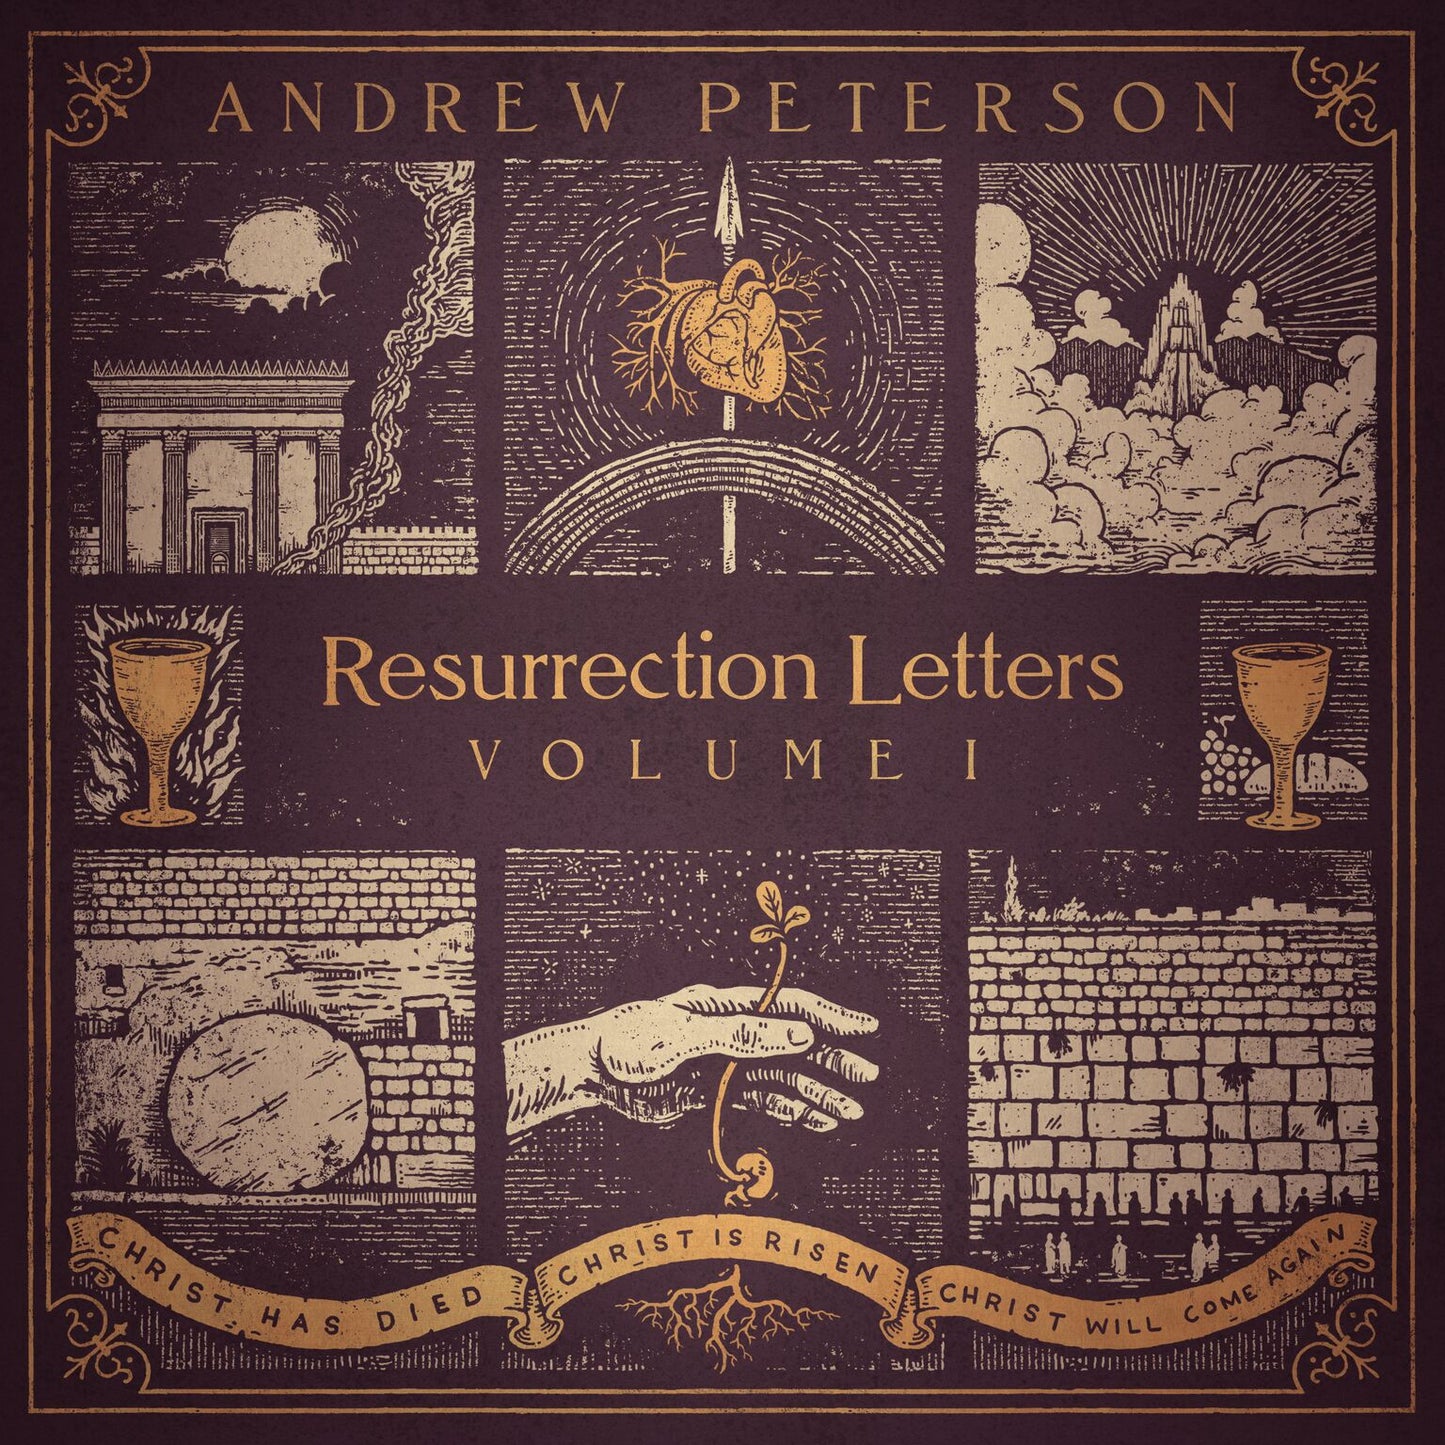 Resurrection Letters, Vol. 1